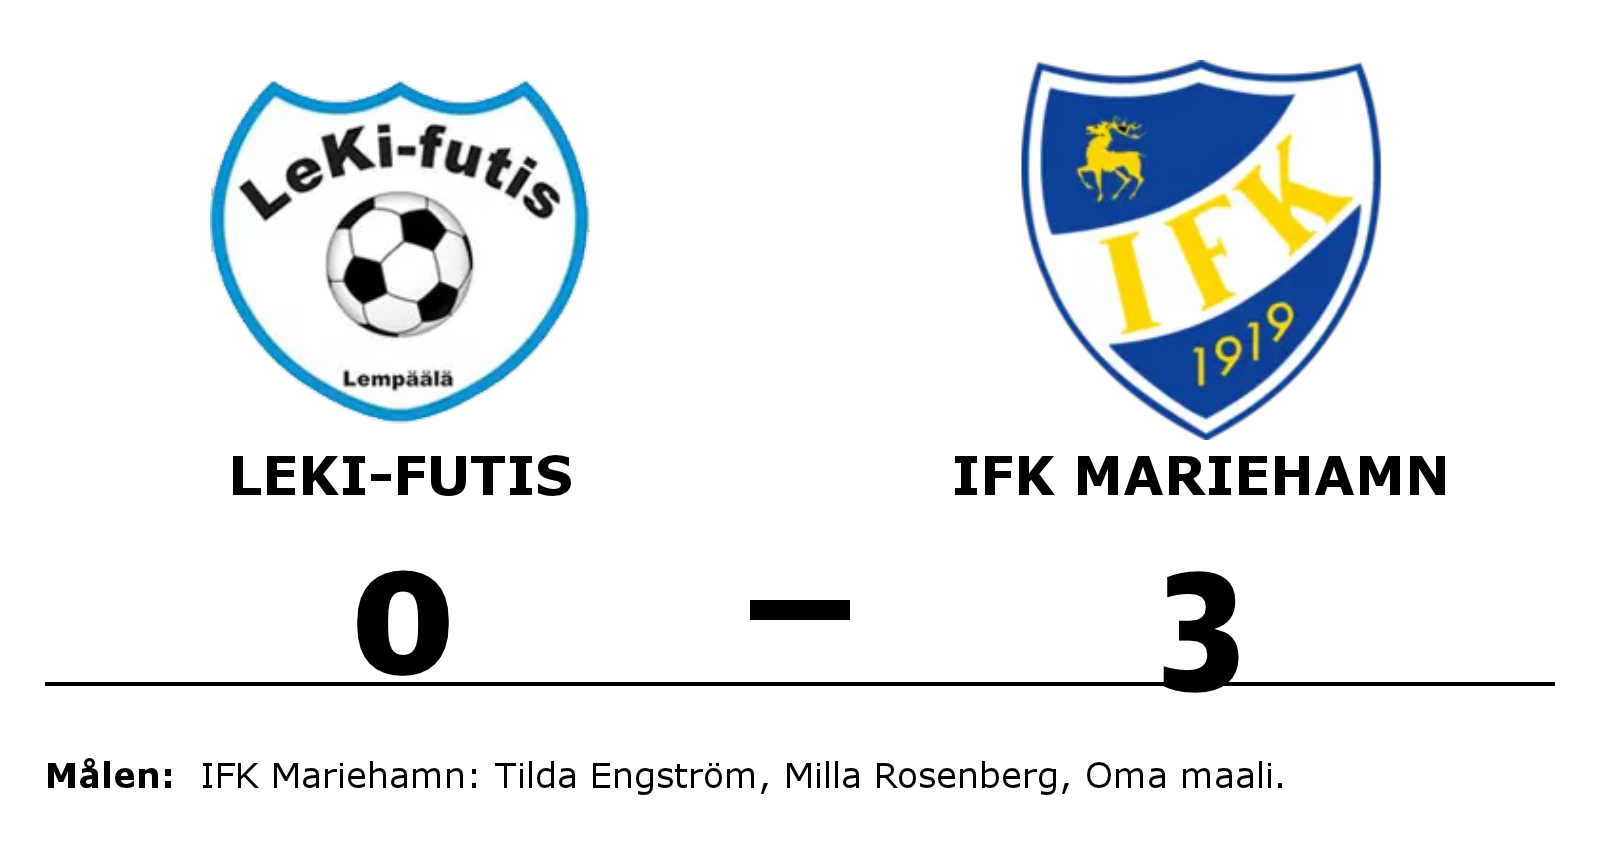 LeKi-futis förlorade mot IFK Mariehamn